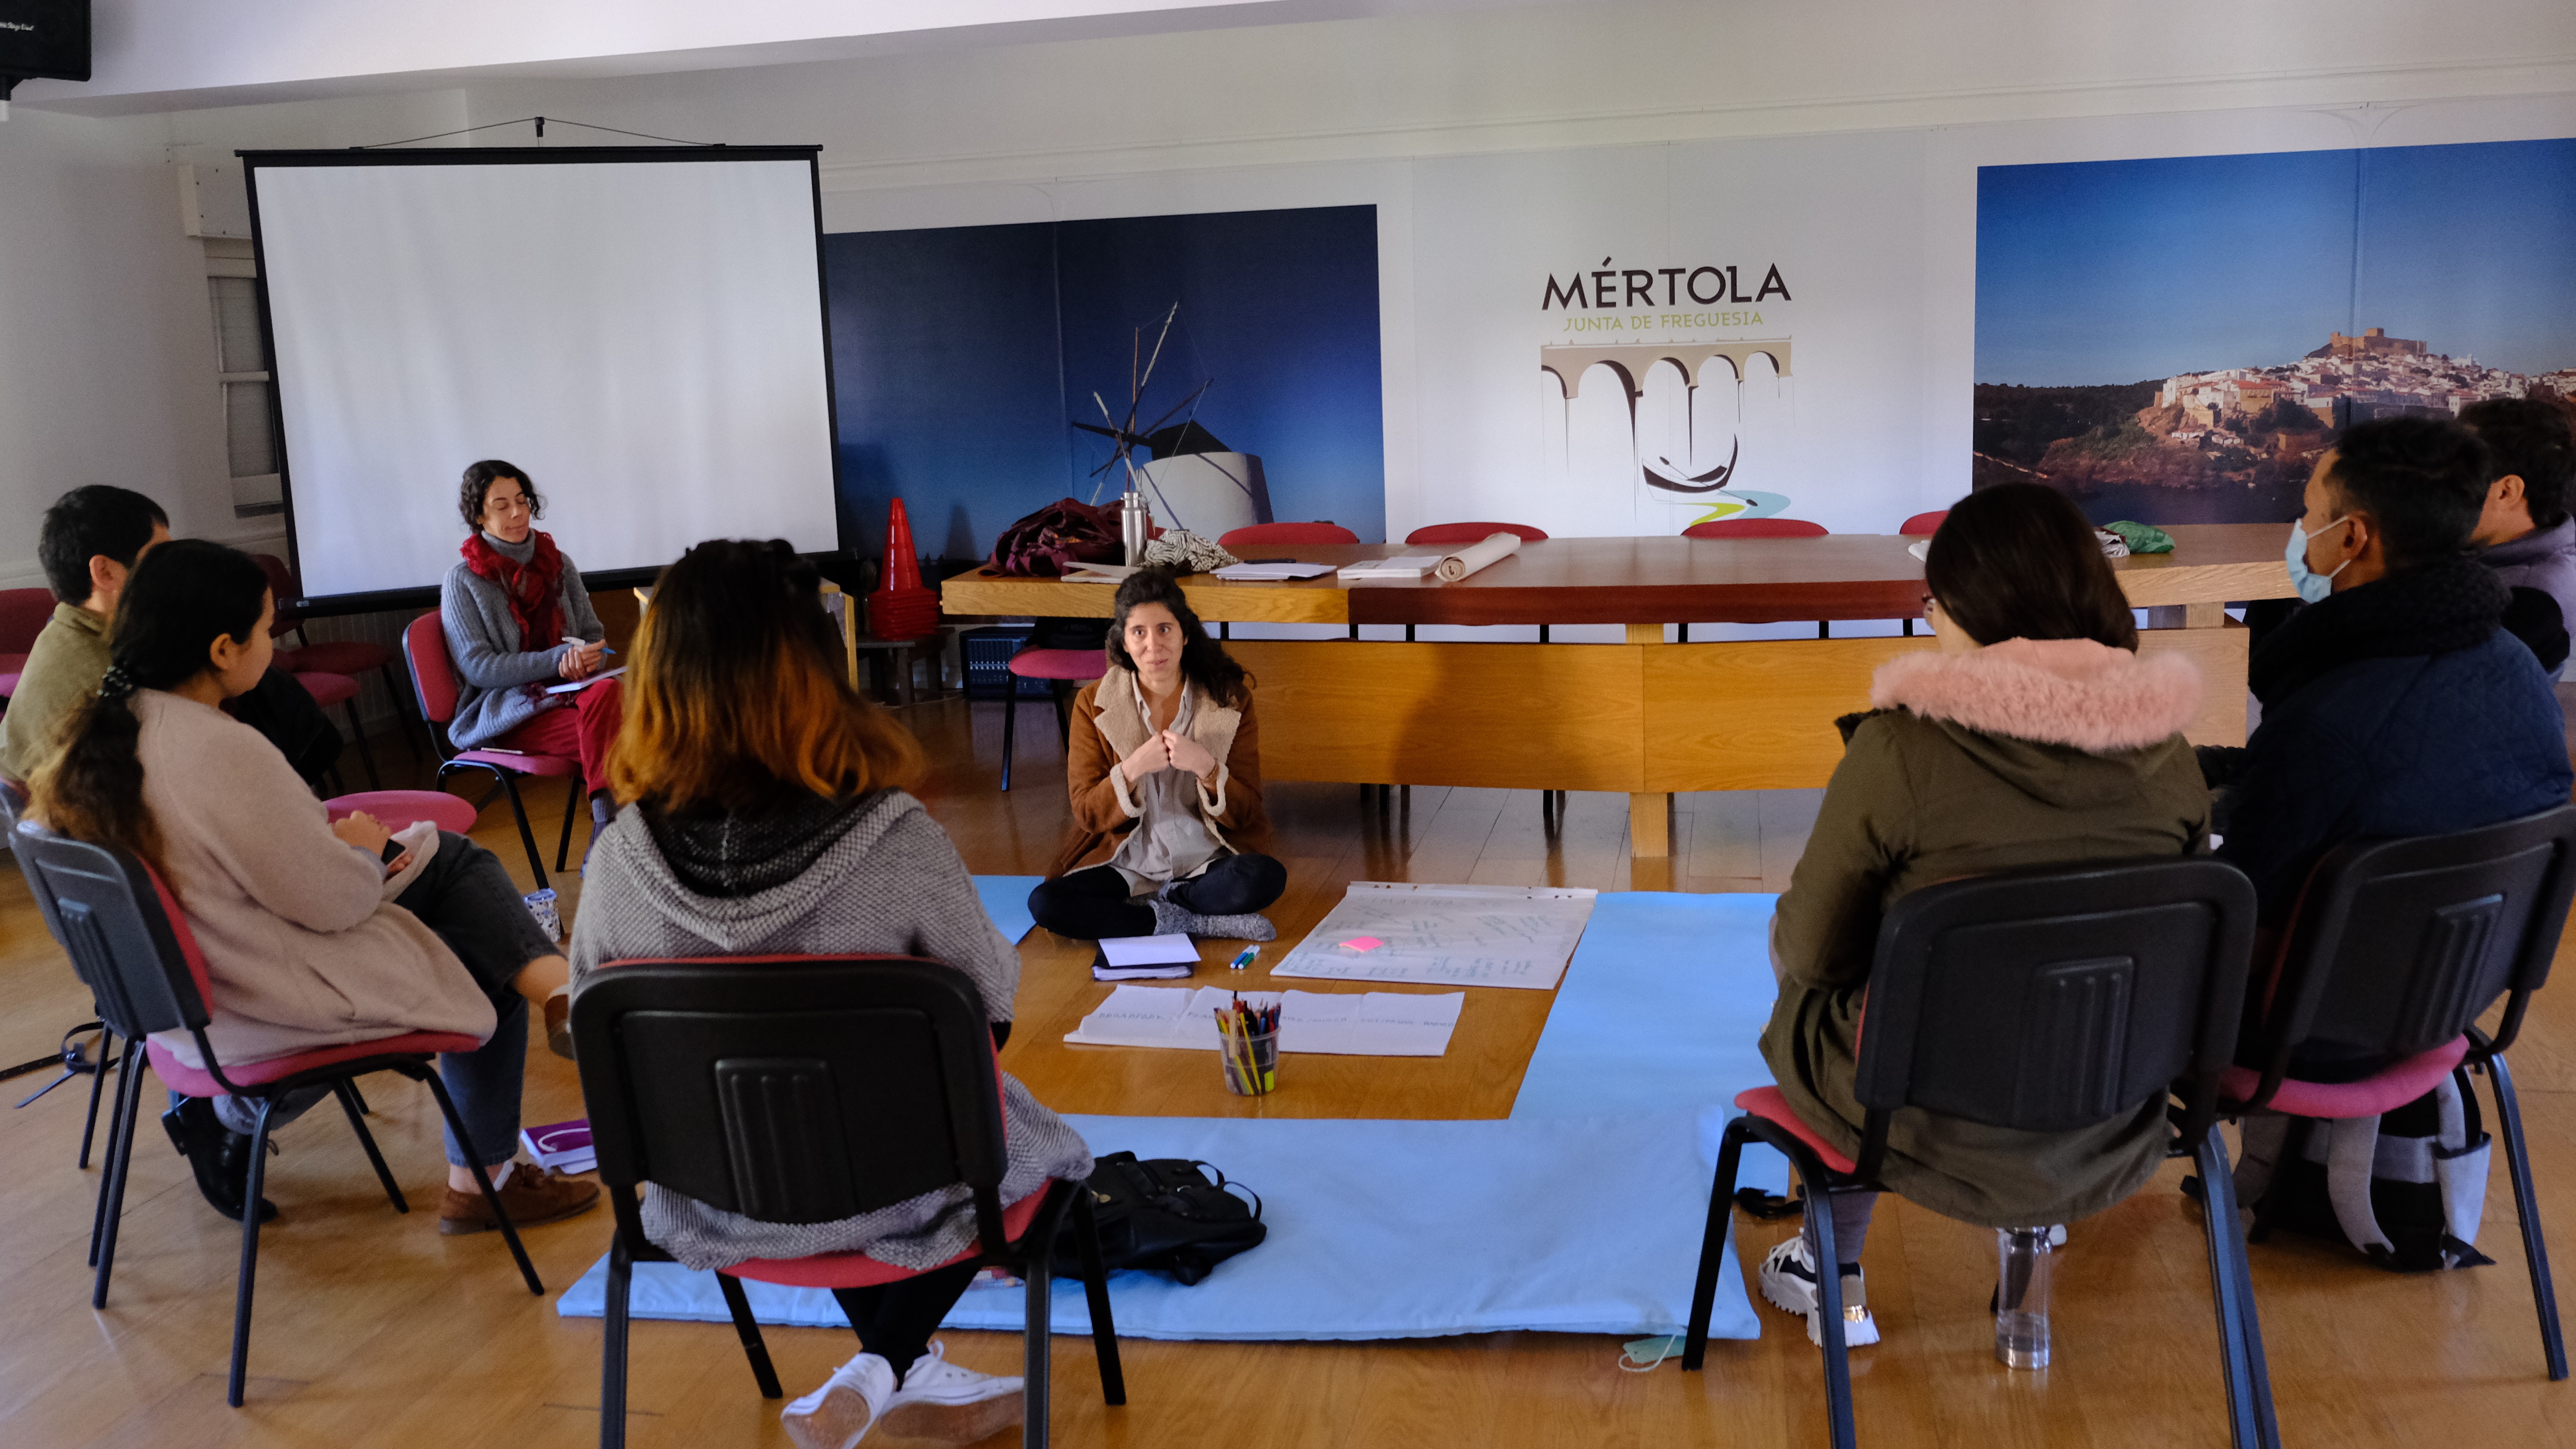 حياة جديدة للاجئين أفغان في البرتغال - مبادرة زراعية مستدامة تركز على البيئة والعدالة الاجتماعية والتضامن. Terra de Abrigo meeting in Mertola, Portugal (image: Marta Vidal)